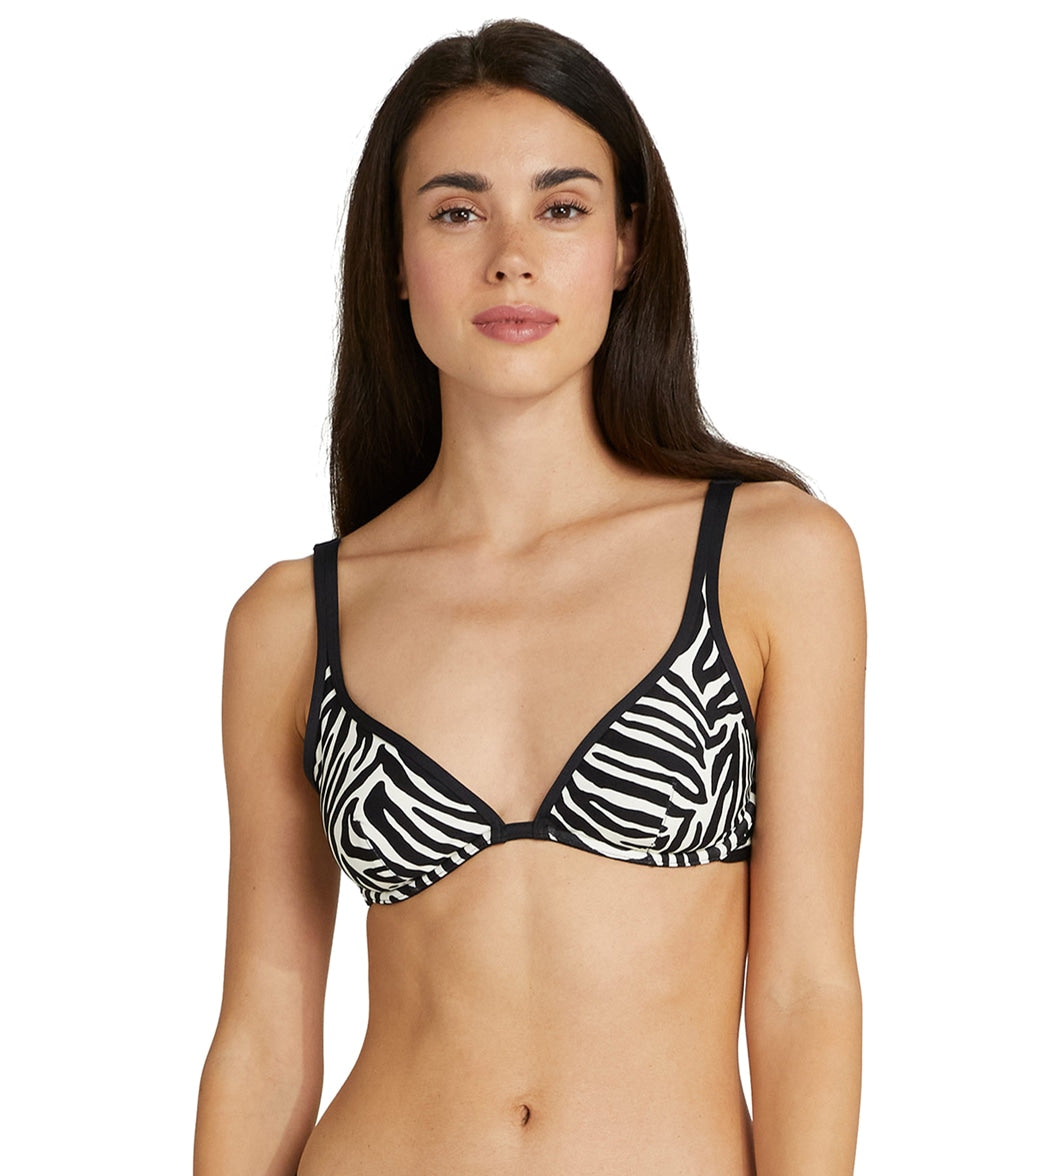 Kate Spade New York Womens Zebra Bralette Bikini Top